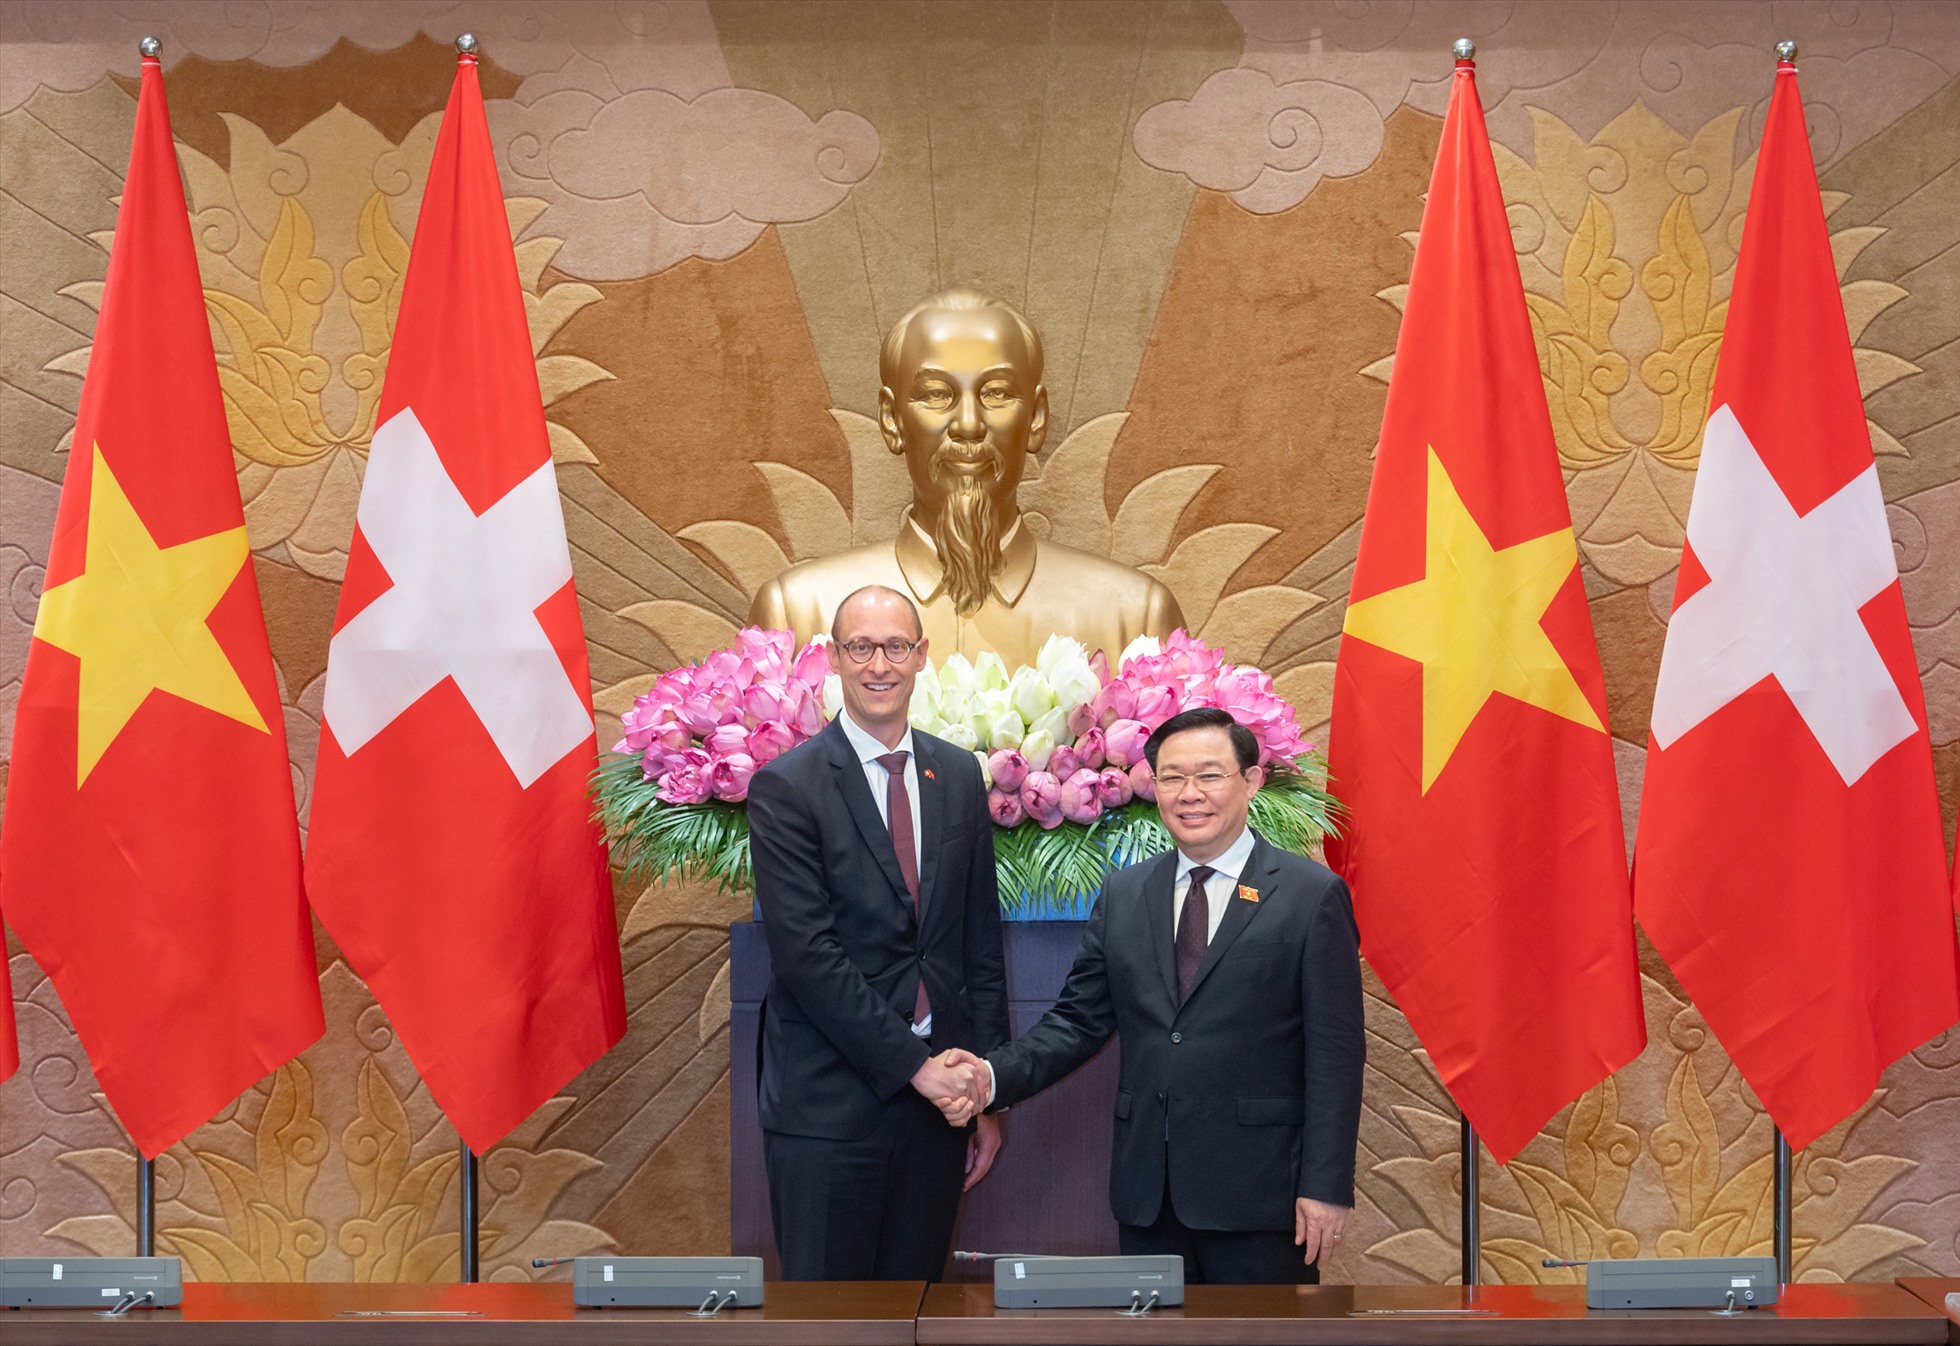 Thụy Sĩ sẽ luôn quan tâm, sát cánh và sẵn sàng hỗ trợ Việt Nam để hai bên cùng đạt được mục tiêu phát triển bền vững. Ảnh: Quochoi.vn